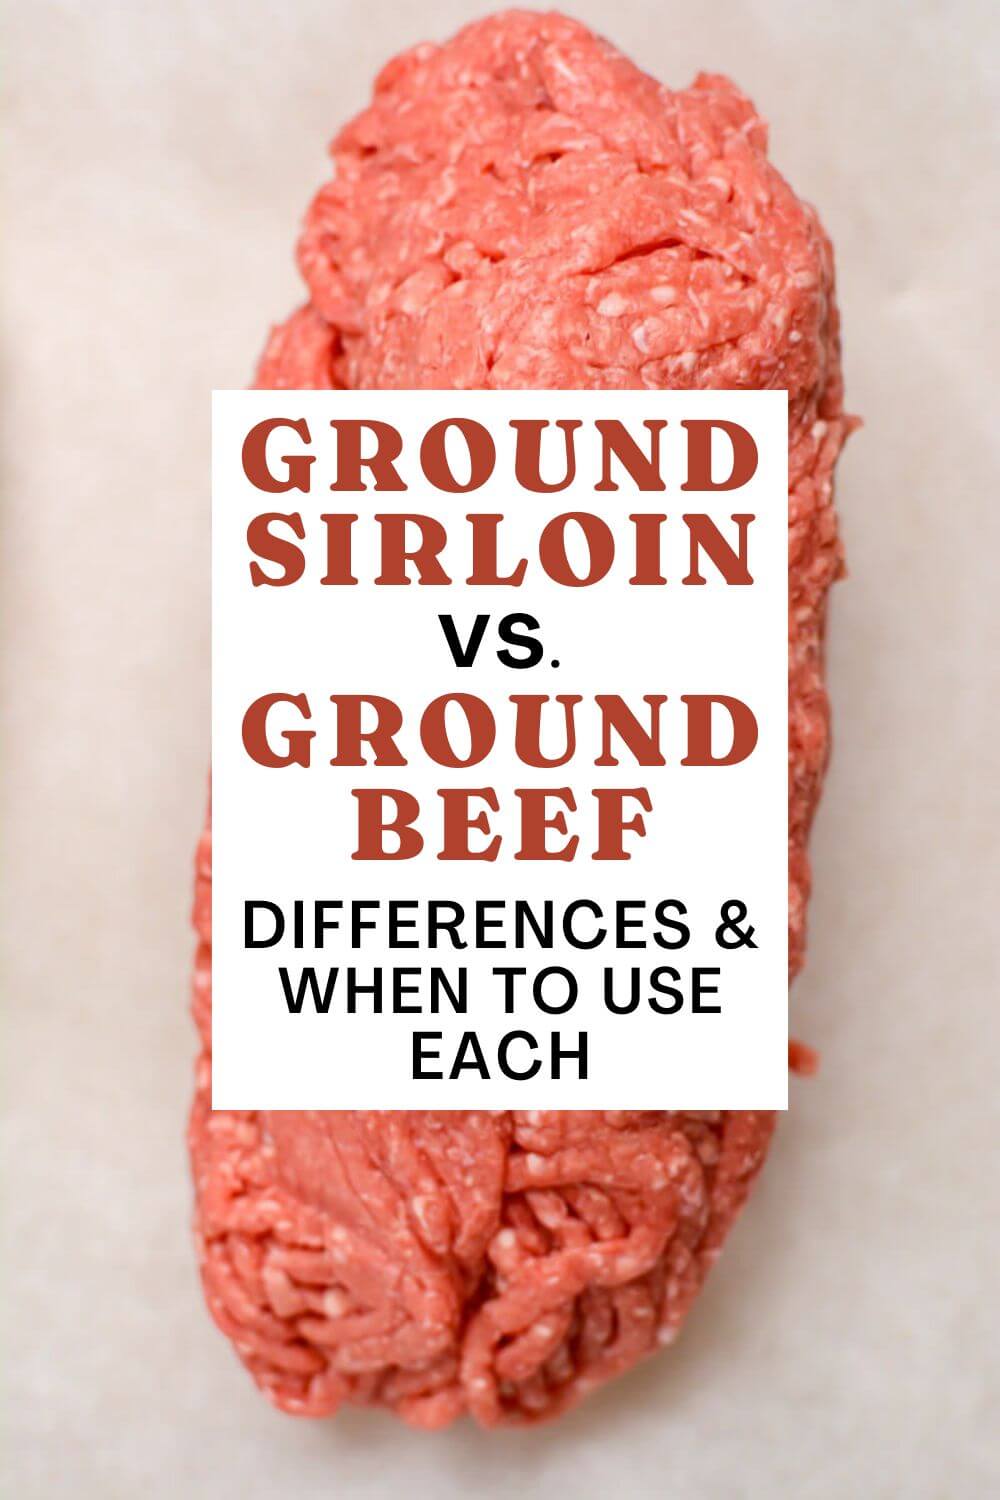 Ground Sirloin Vs Ground Beef